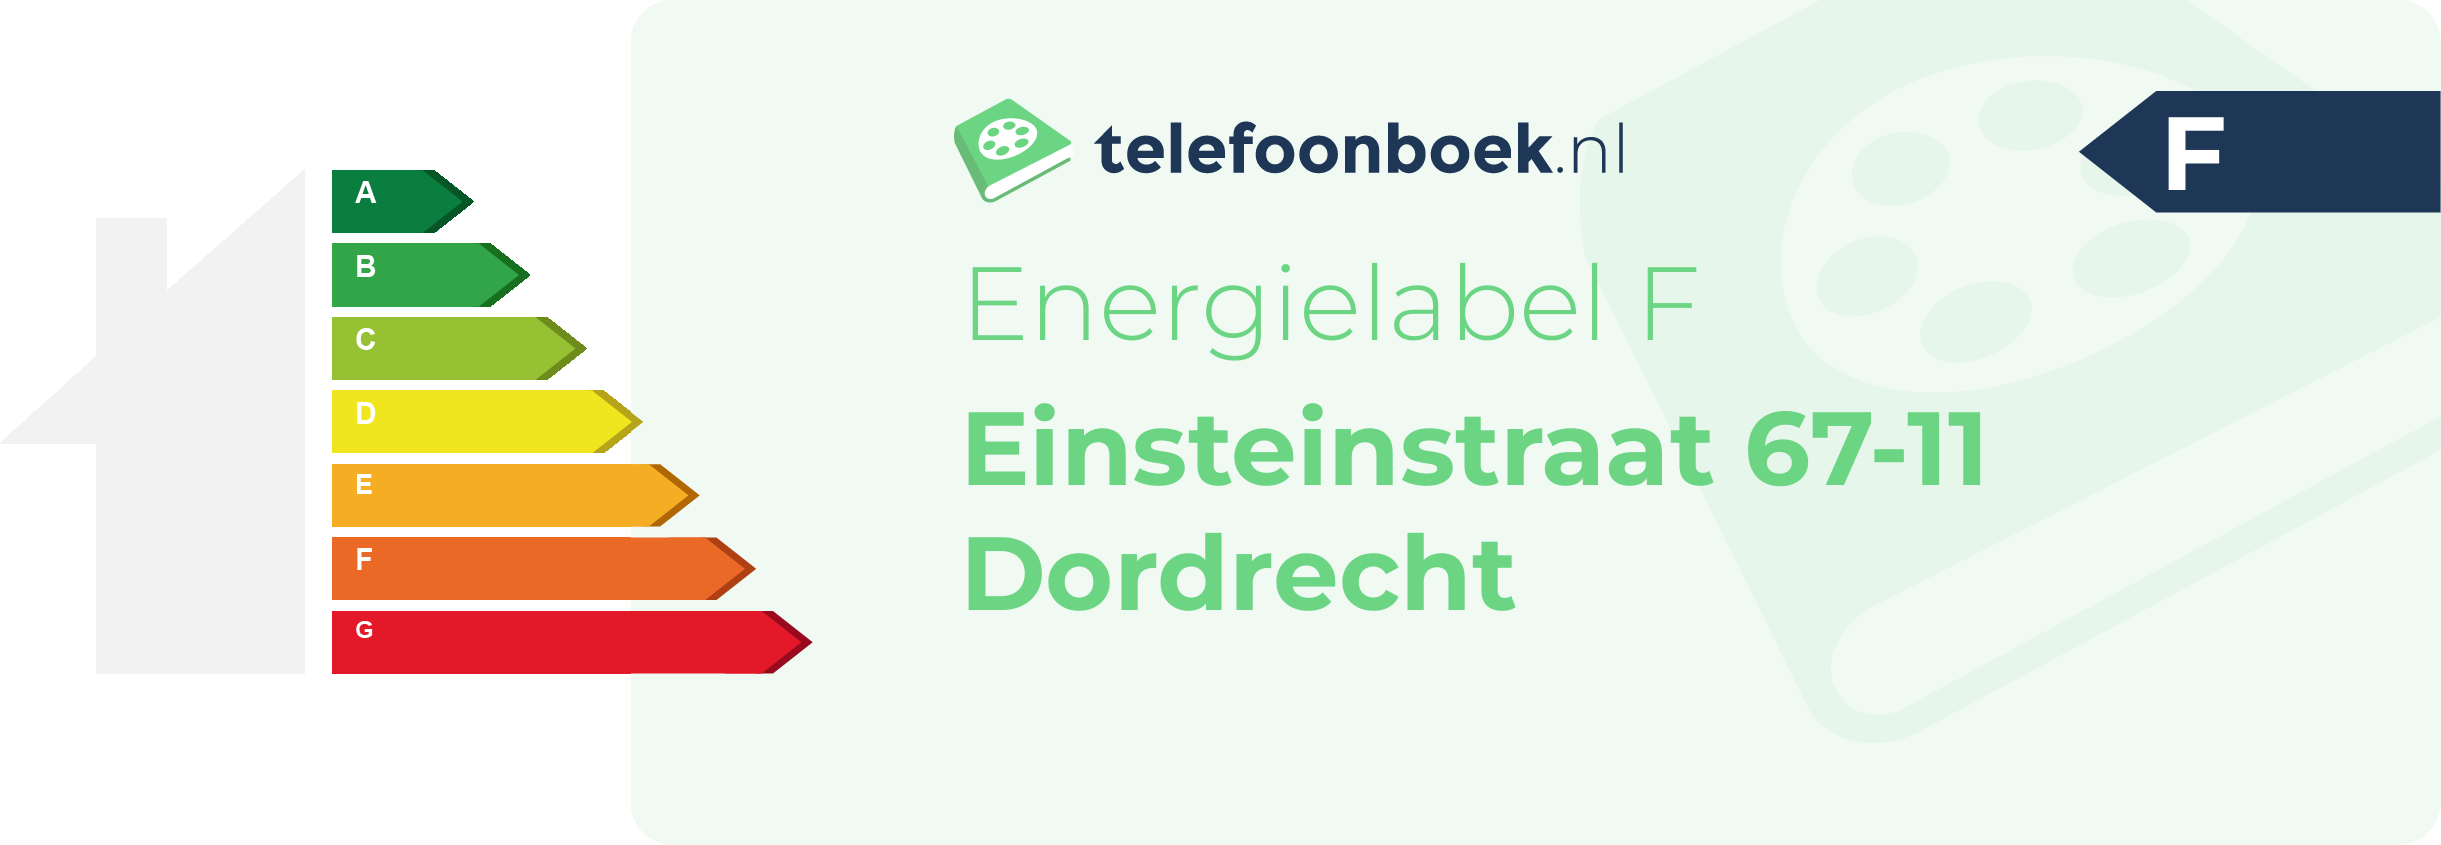 Energielabel Einsteinstraat 67-11 Dordrecht